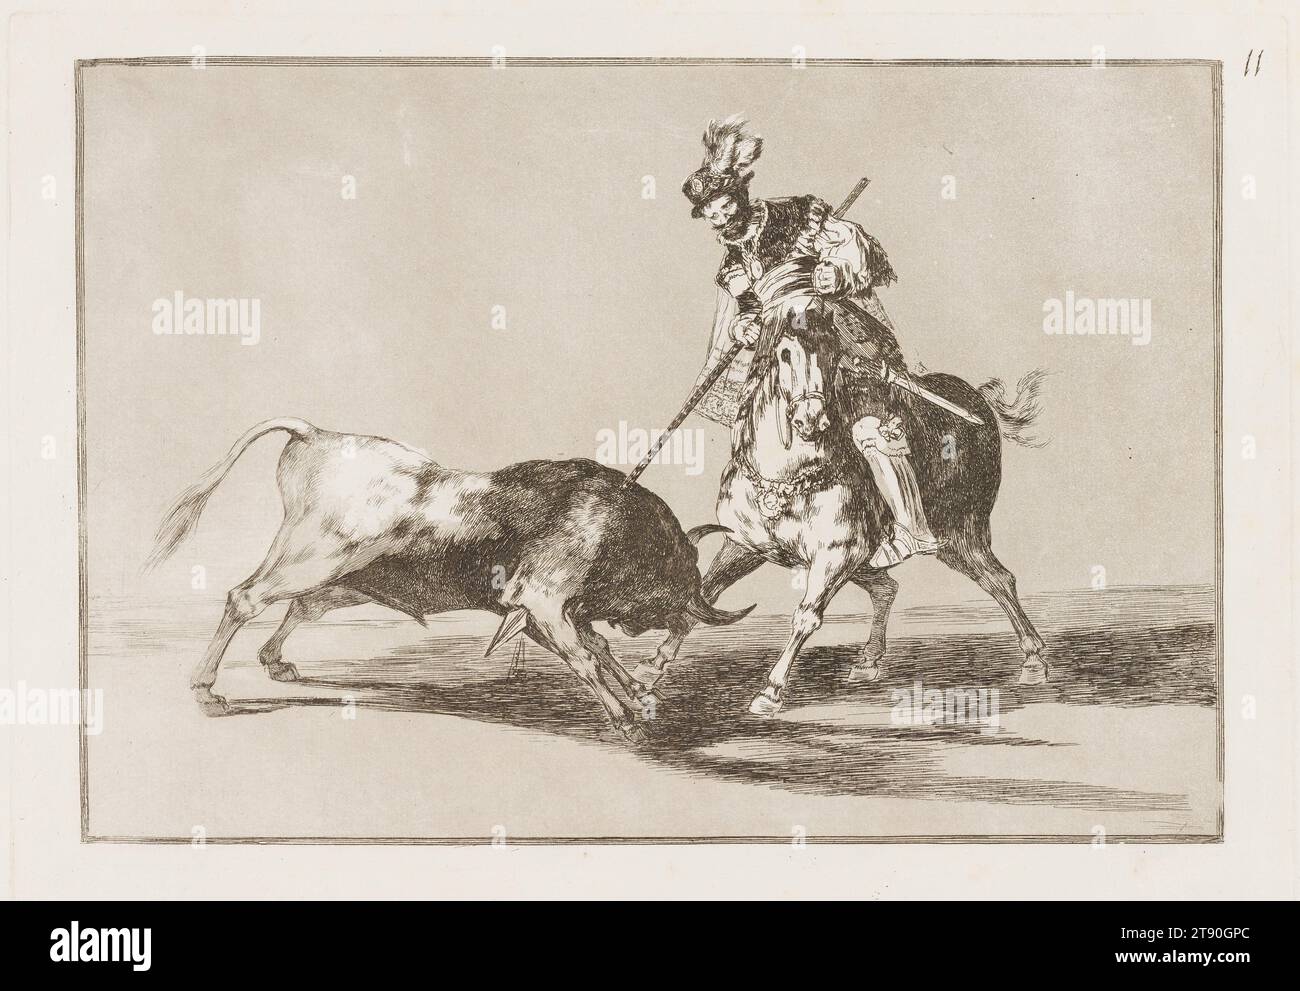 El Cid Campeador lanceado otro toro (El Cid Campeador Spearing Another Bull), 1816, Francisco José de Goya y Lucientes, spagnolo, 1746–1828, 8 7/16 x 12 5/16 in. (21,43 x 31,27 cm) (immagine)9 13/16 x 13/16" (24,92 x 35,08 cm) (piastra)11 3/8 x 16 1/4" (28,89 x 41,28 cm) (foglio), acquatinta brunita, punto secco e burin, Spagna, nel XIX secolo, nella serie di 33 stampe "Tauromaquia", Goya ripercorre la storia della corrida in Spagna, dagli uomini che cacciano in campi aperti allo spettacolo moderno e ritualizzato che divenne nel XVIII secolo. Inventa parte della storia dello sport Foto Stock